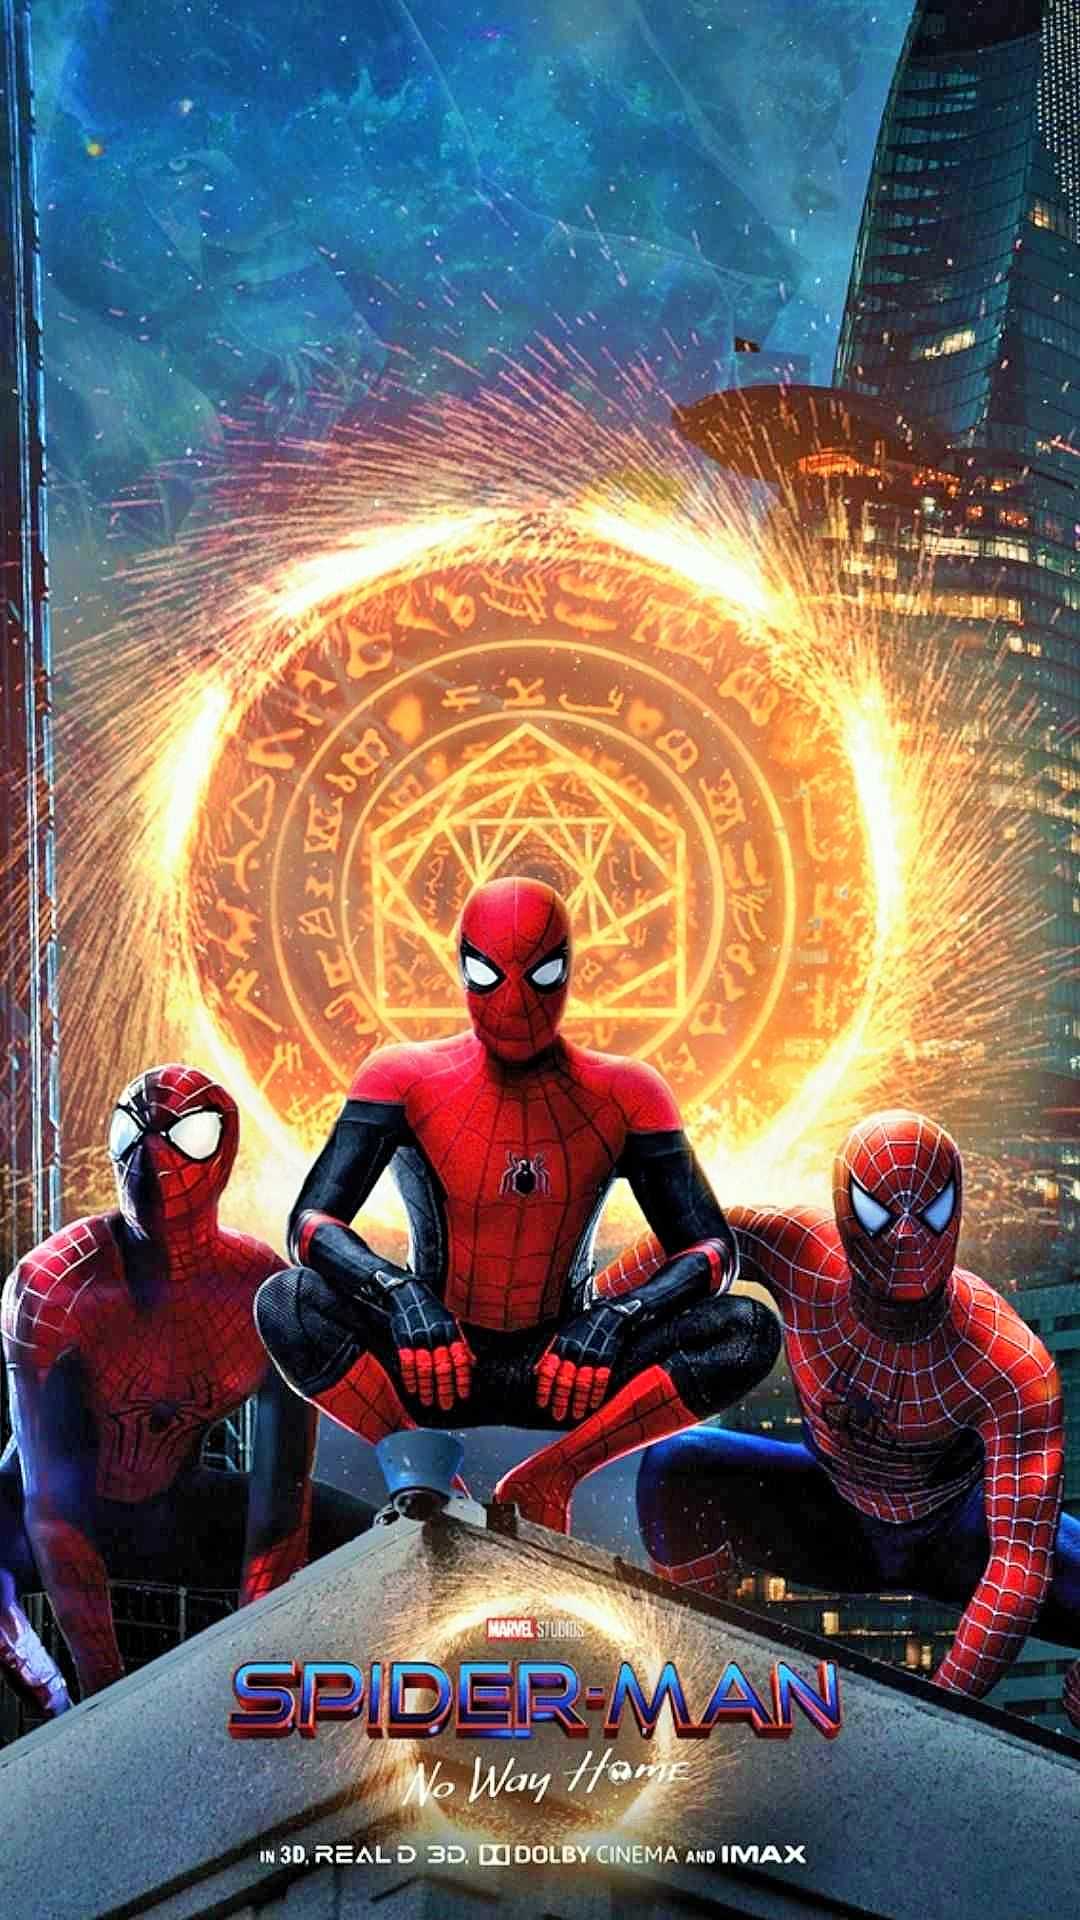 Hãy trở thành những fan cuồng Spider-Man và tải xuống những hình nền chất lượng cao để trang trí màn hình điện thoại của bạn. Với những tấm ảnh đẹp nhất về siêu anh hùng nổi tiếng này, bạn sẽ không thể chối từ mà không tải về!